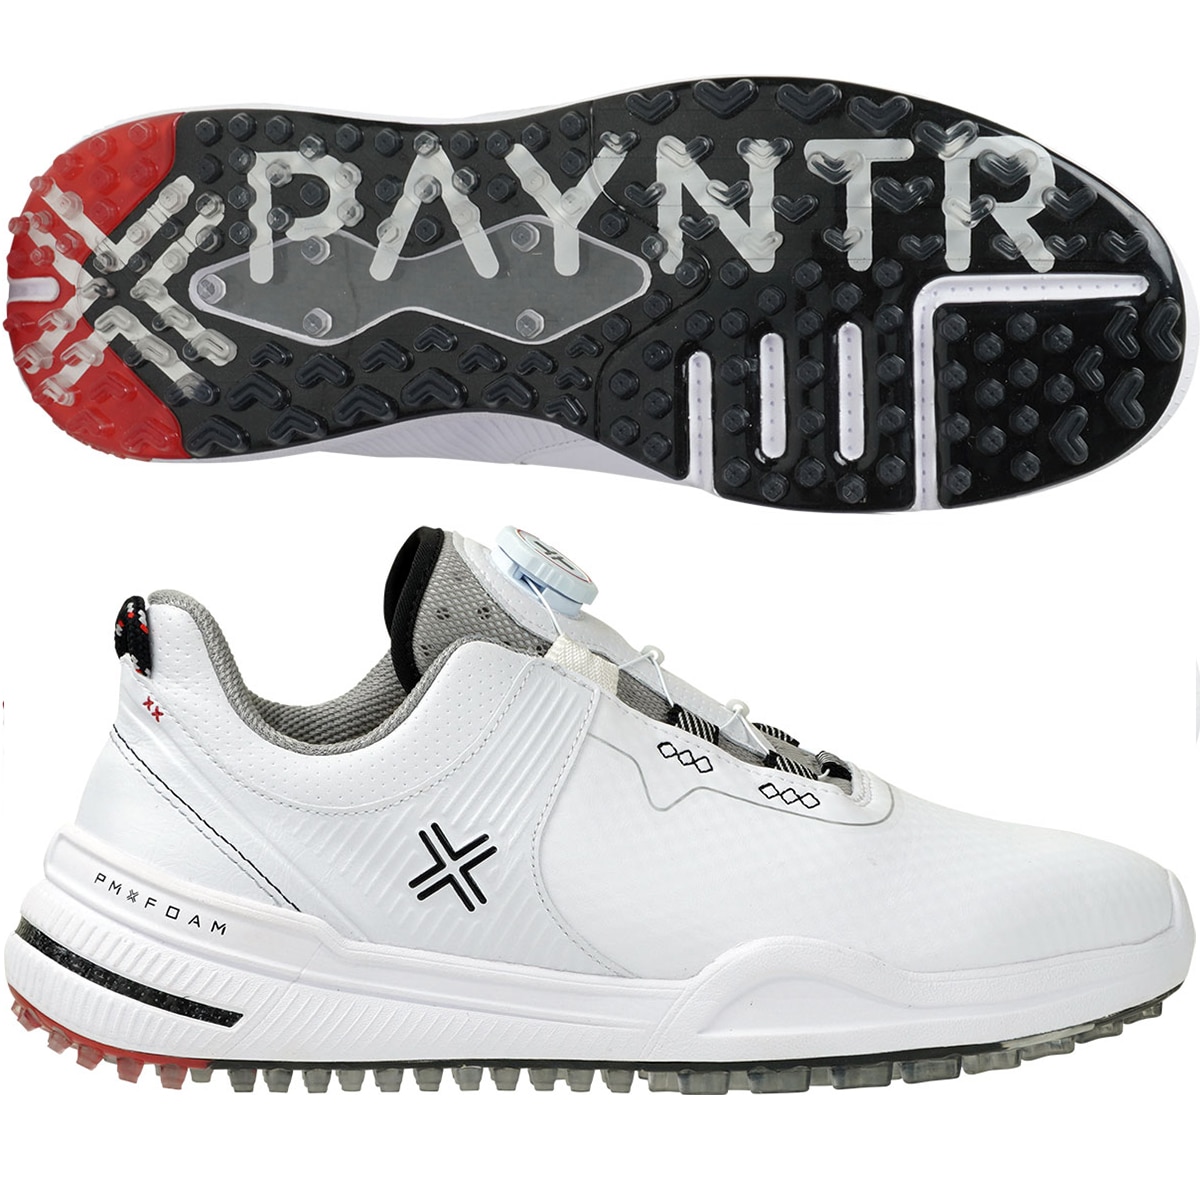 Payntr X 002 FF ゴルフシューズ(【男性】シューズ)|PAYNTR GOLF 